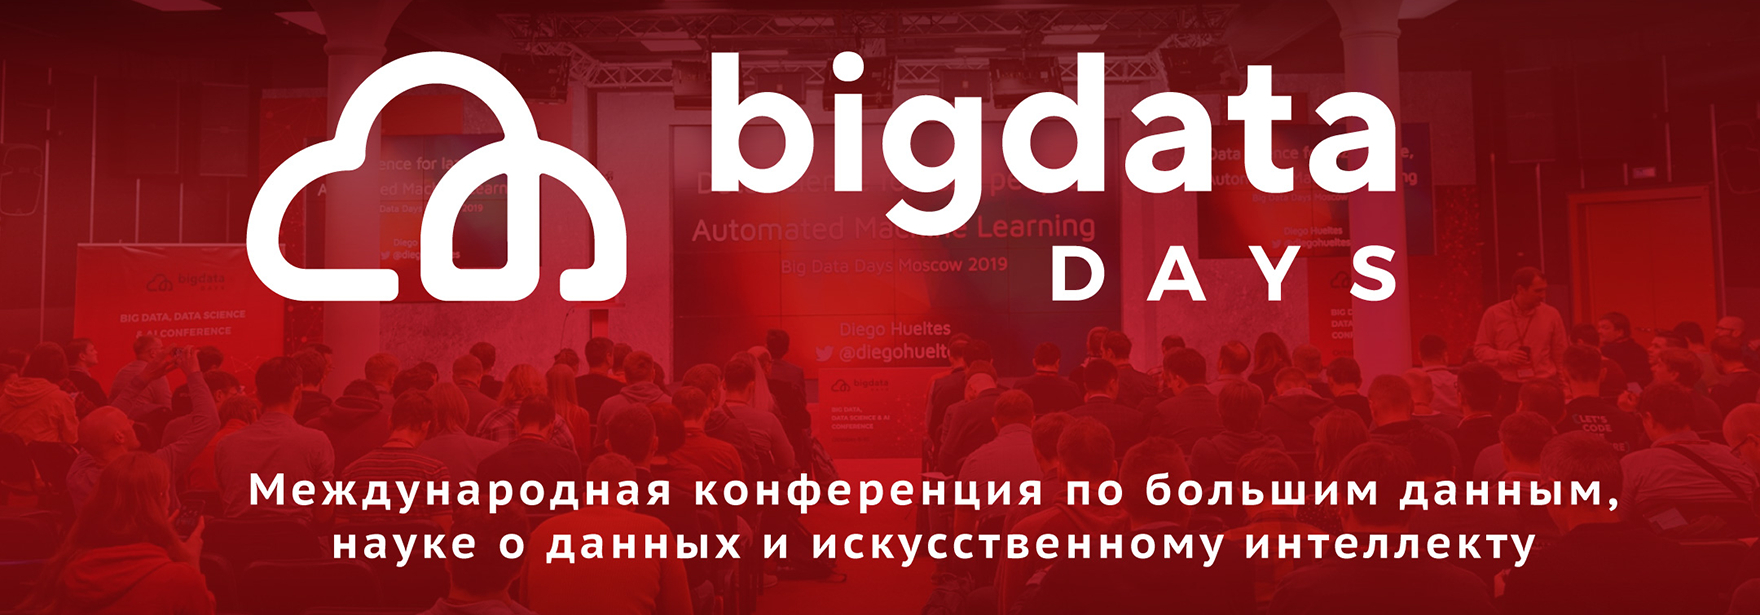 Обложка курса Конференция Big Data Days 2020